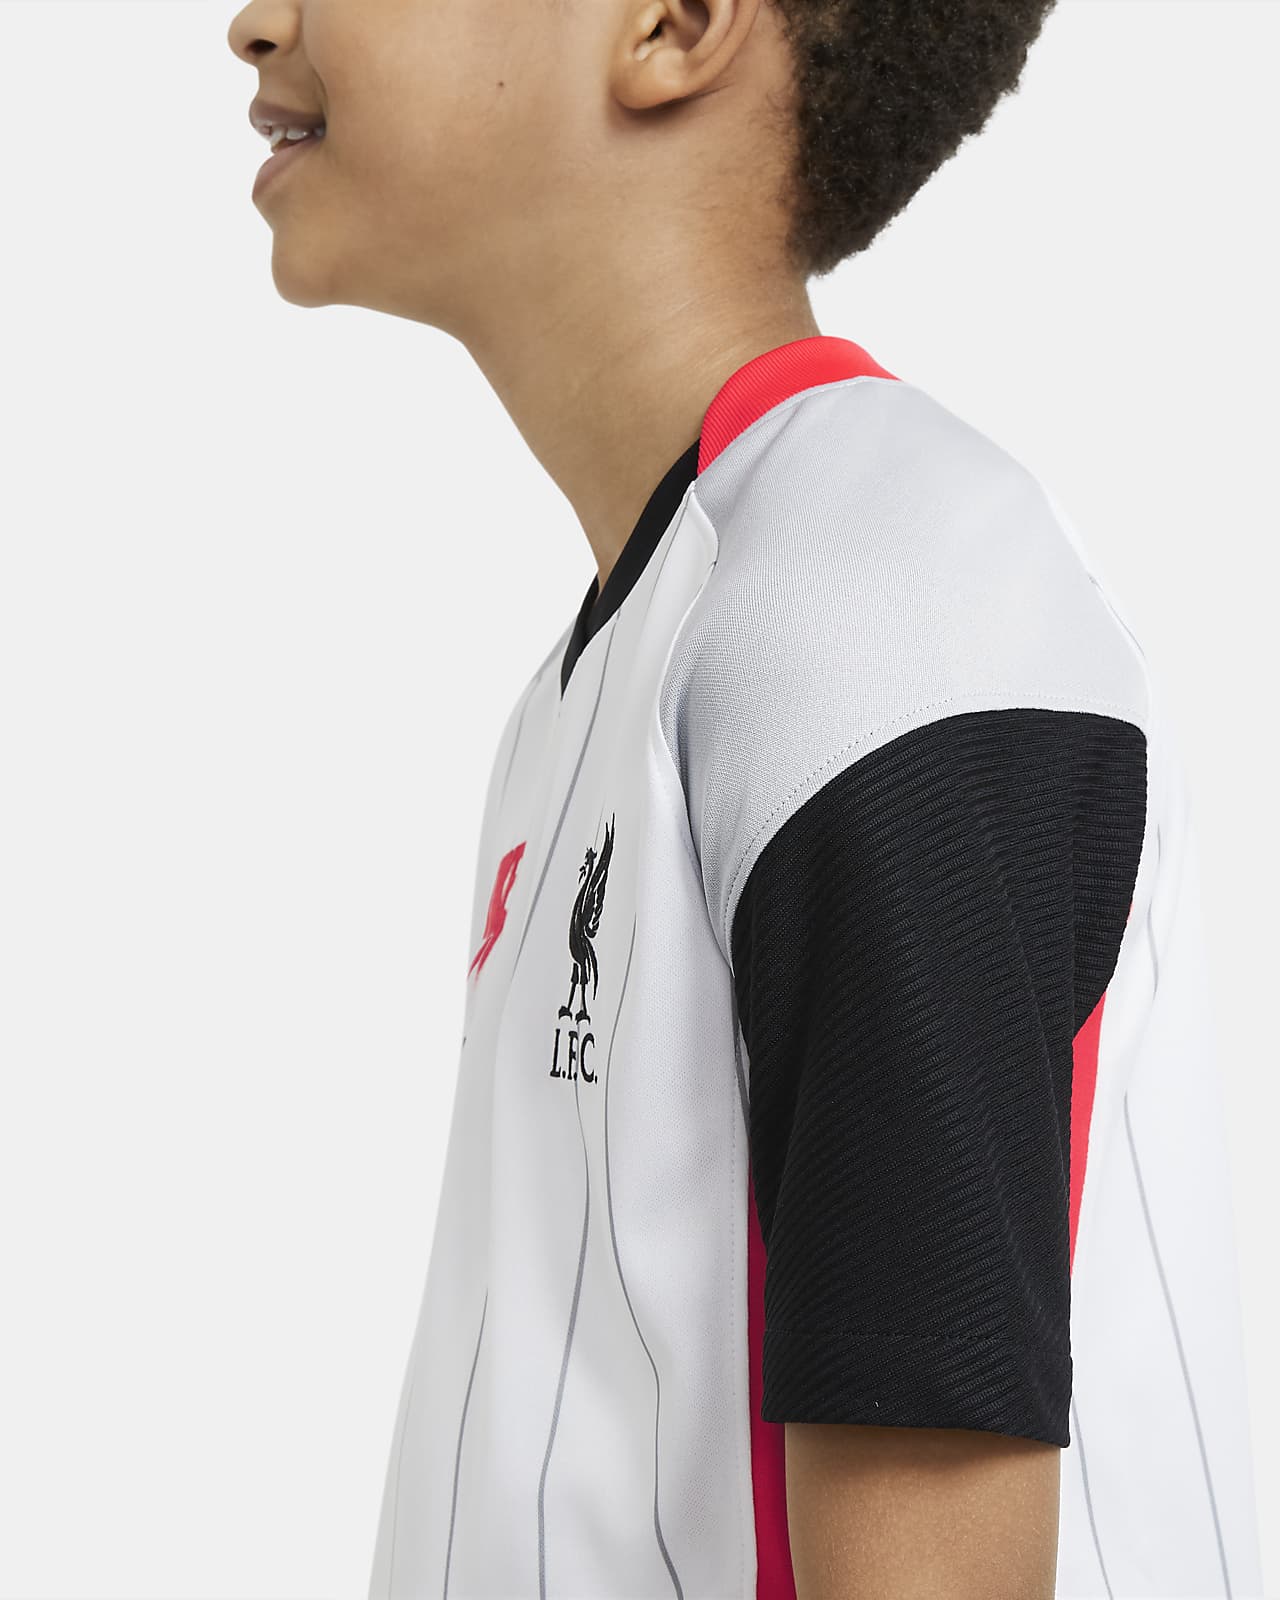 Nike公式 リバプール Fc スタジアム エア マックス ジュニア サッカーユニフォーム オンラインストア 通販サイト